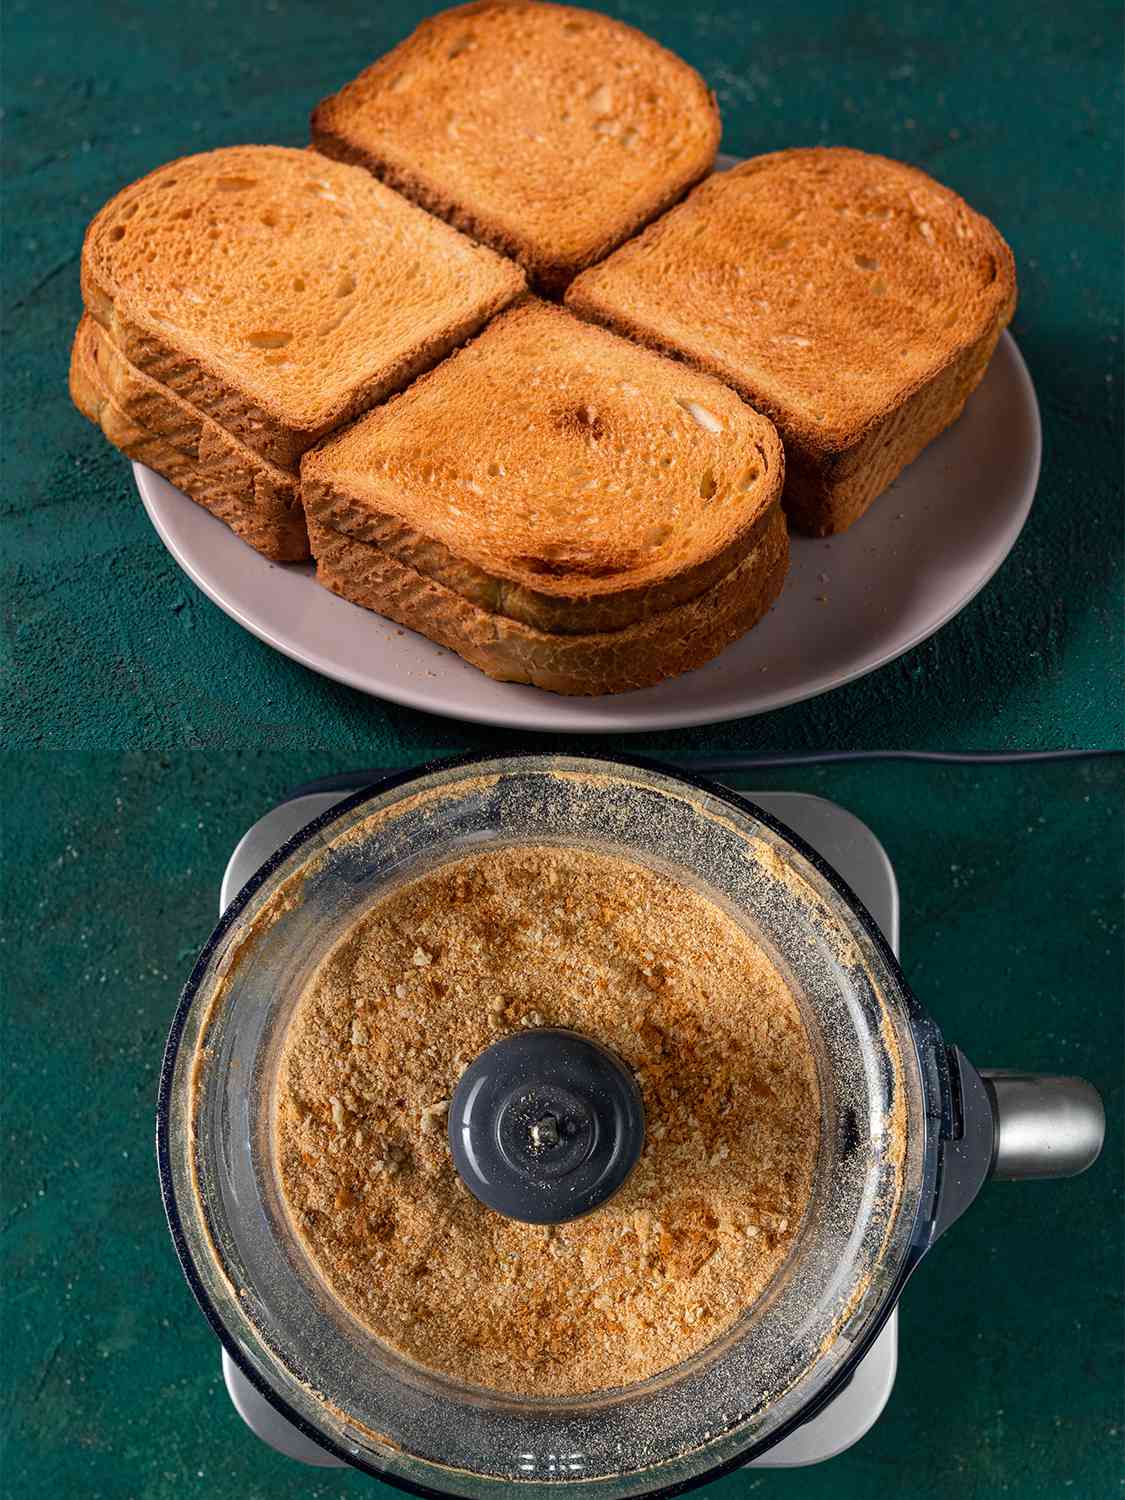 垂直的两幅图像拼贴画。上面的图片显示了一个盘子上的四片烤面包，而下面的照片显示了一个食品加工机，里面装满了加工过的烤面包制成的面包屑。